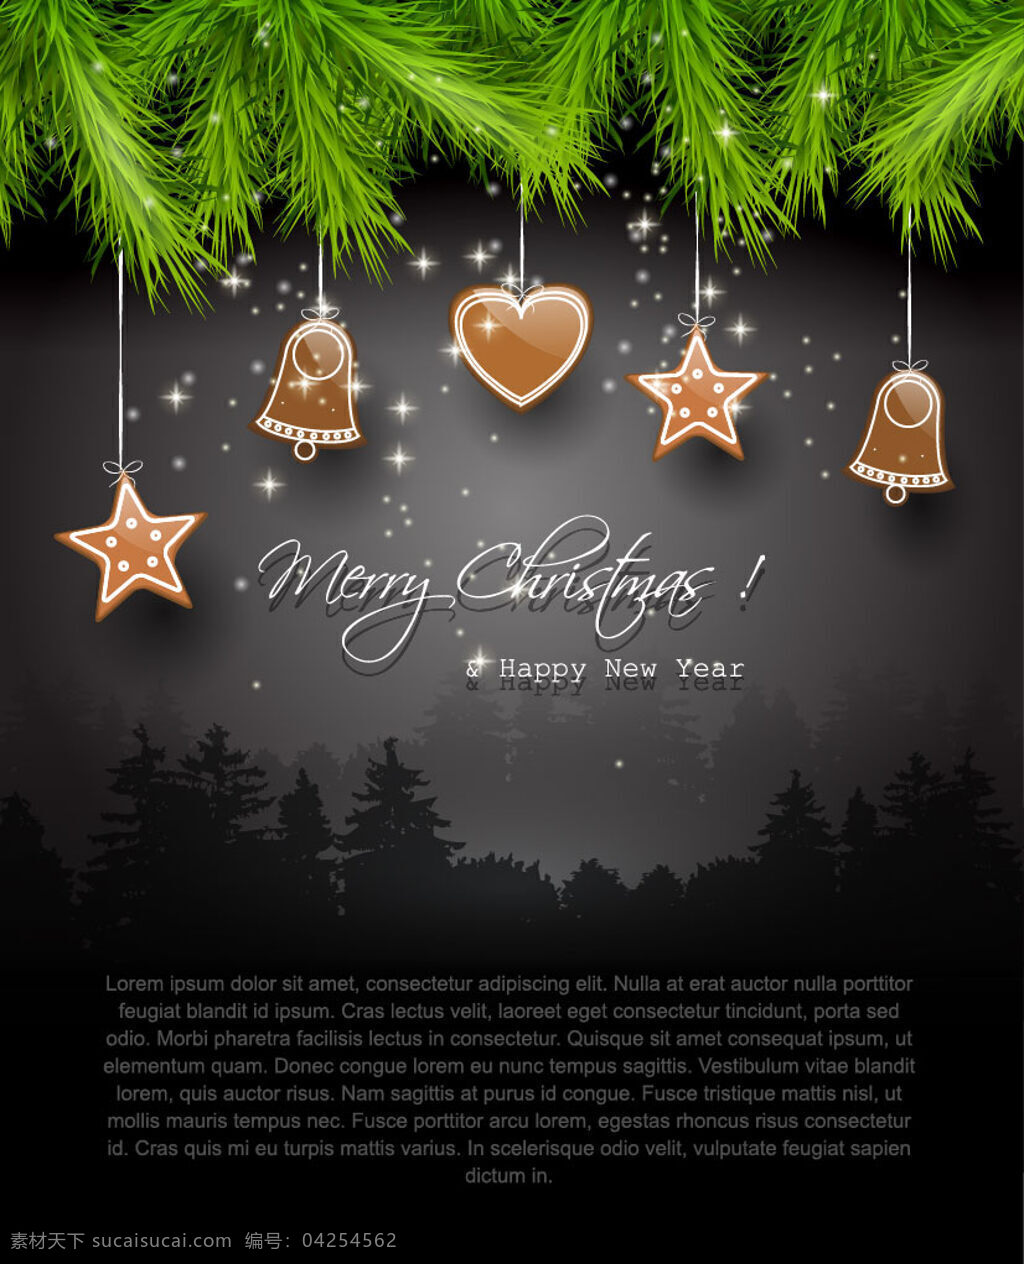 黑暗 圣诞 分公司 图标 问候 背景壁纸 庆典和聚会 圣诞节 设计元素 花卉和漩涡 假日与季节 装饰装潢 模板和模型